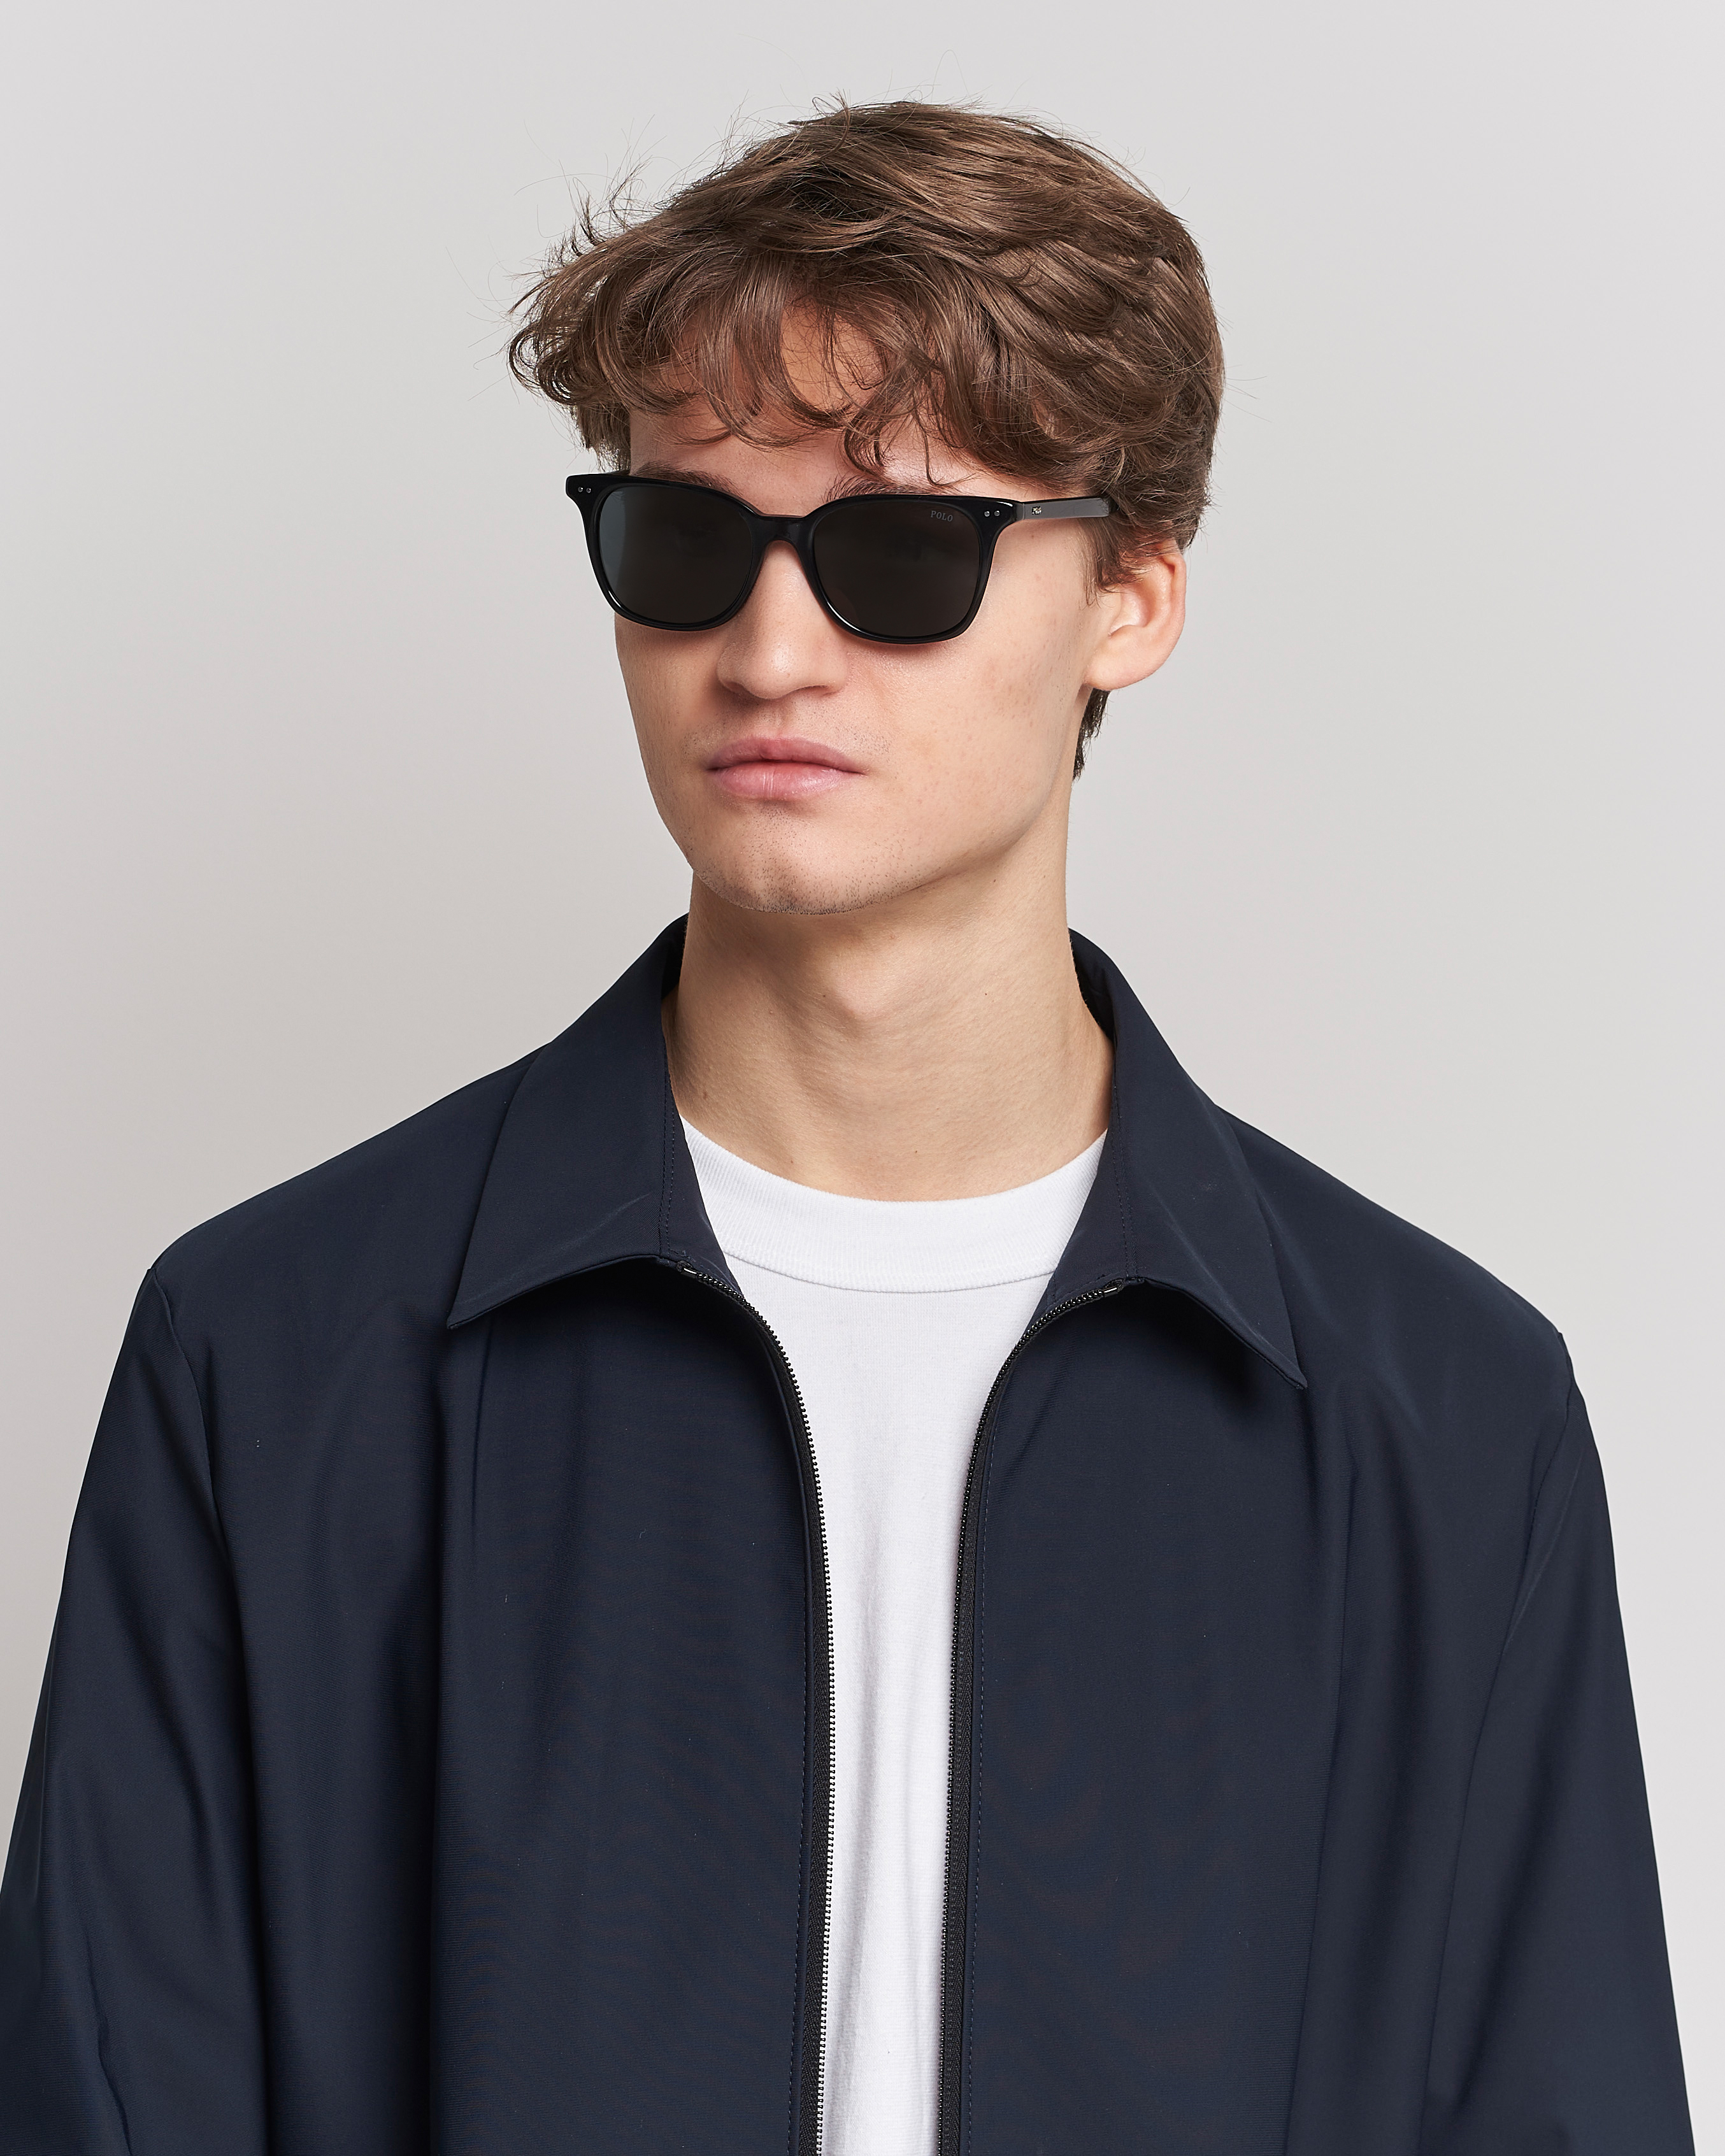 Herren | Polo Ralph Lauren | Polo Ralph Lauren | 0PH4187 Sunglasses Shiny Black